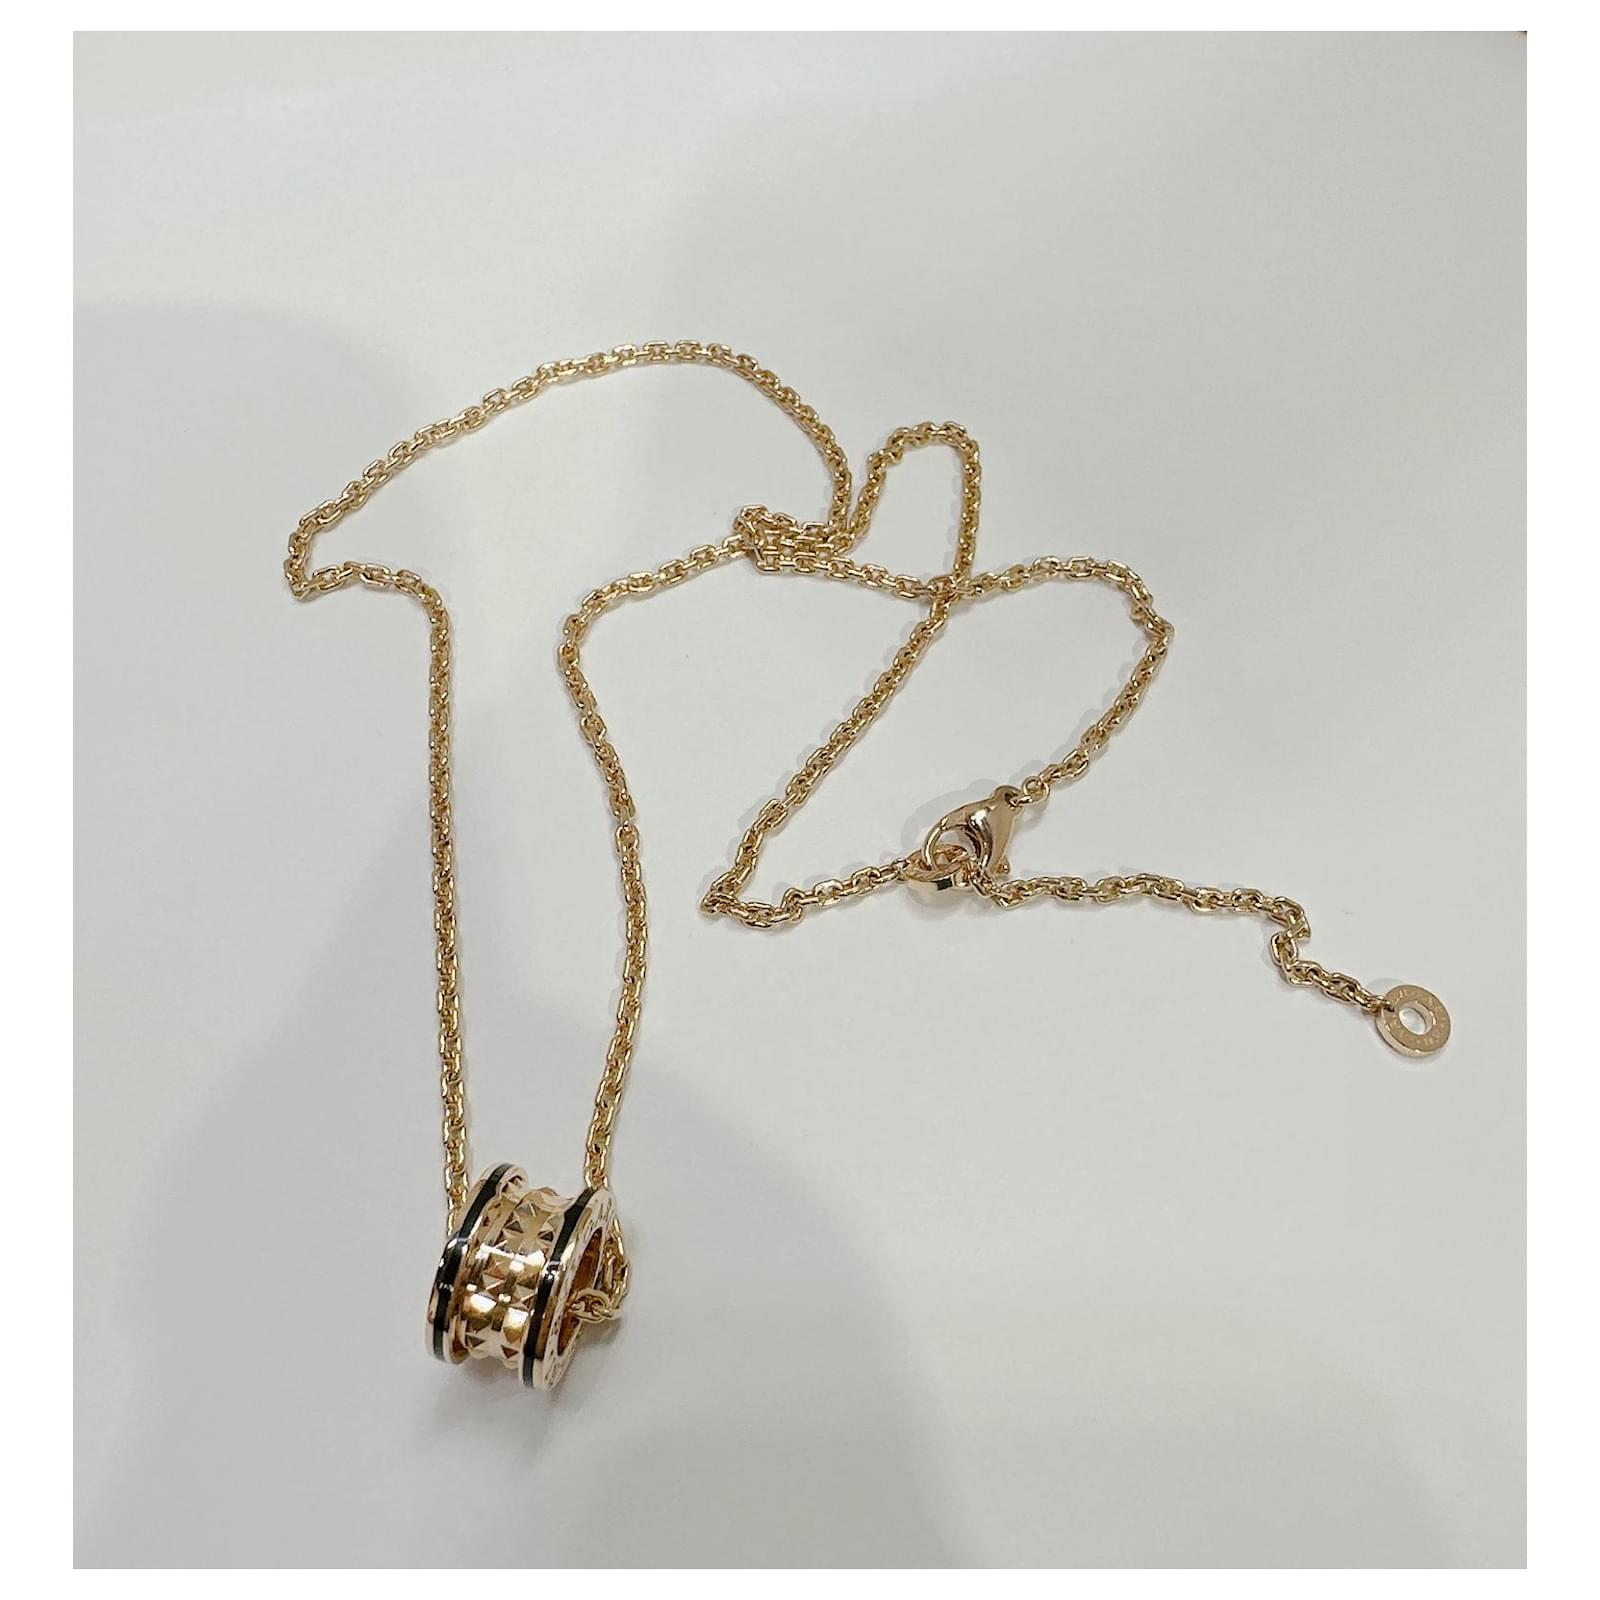 Bvlgari B.zero1 18kt Pink Gold and Ceramic Pendant with Chain